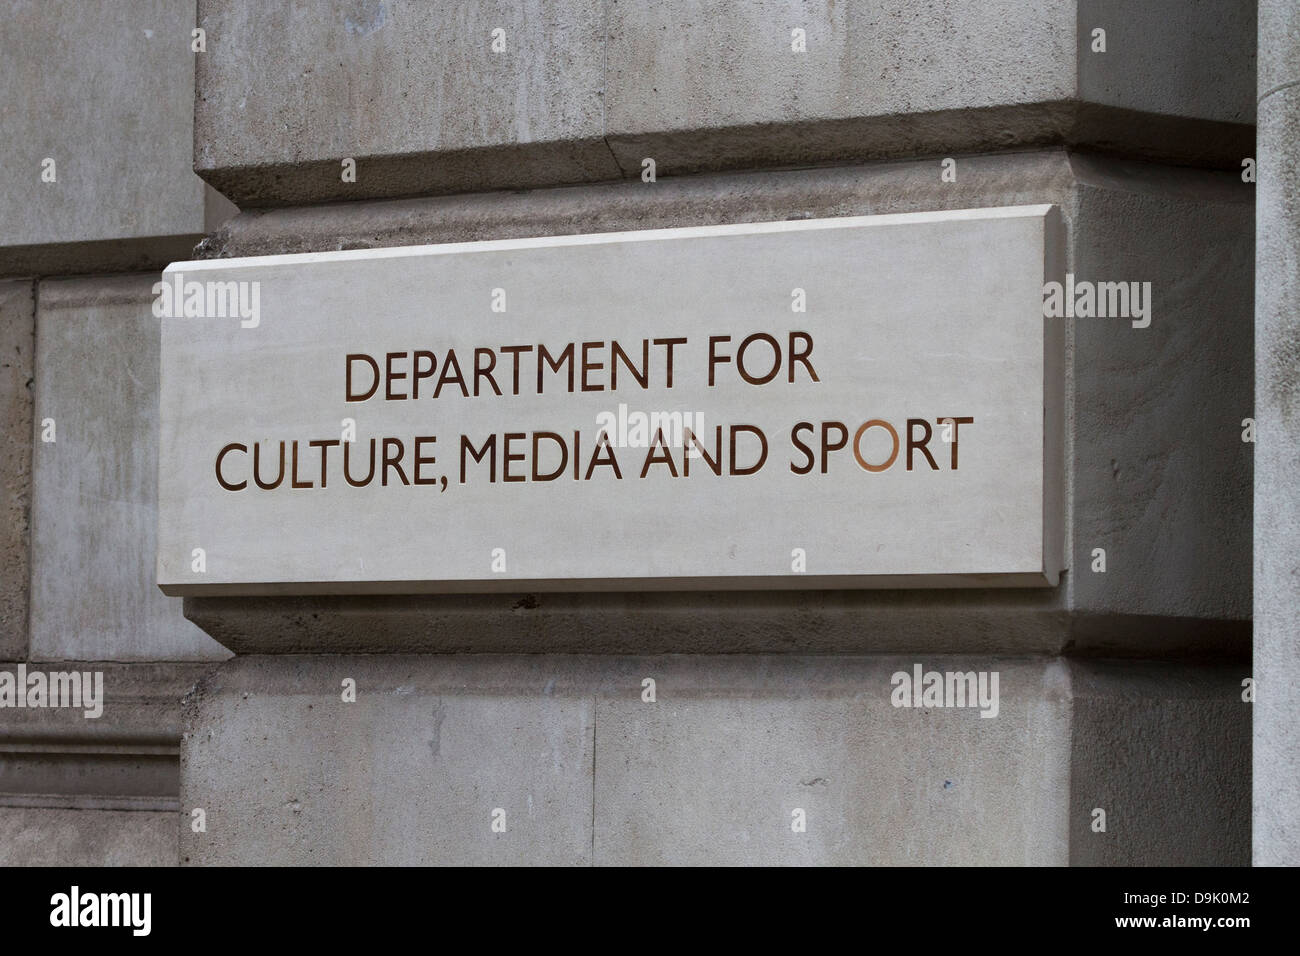 Nom / plaque panneau routier à l'entrée du ministère de la Culture, des médias et du Sport, Whitehall, Westminster, London, UK Banque D'Images